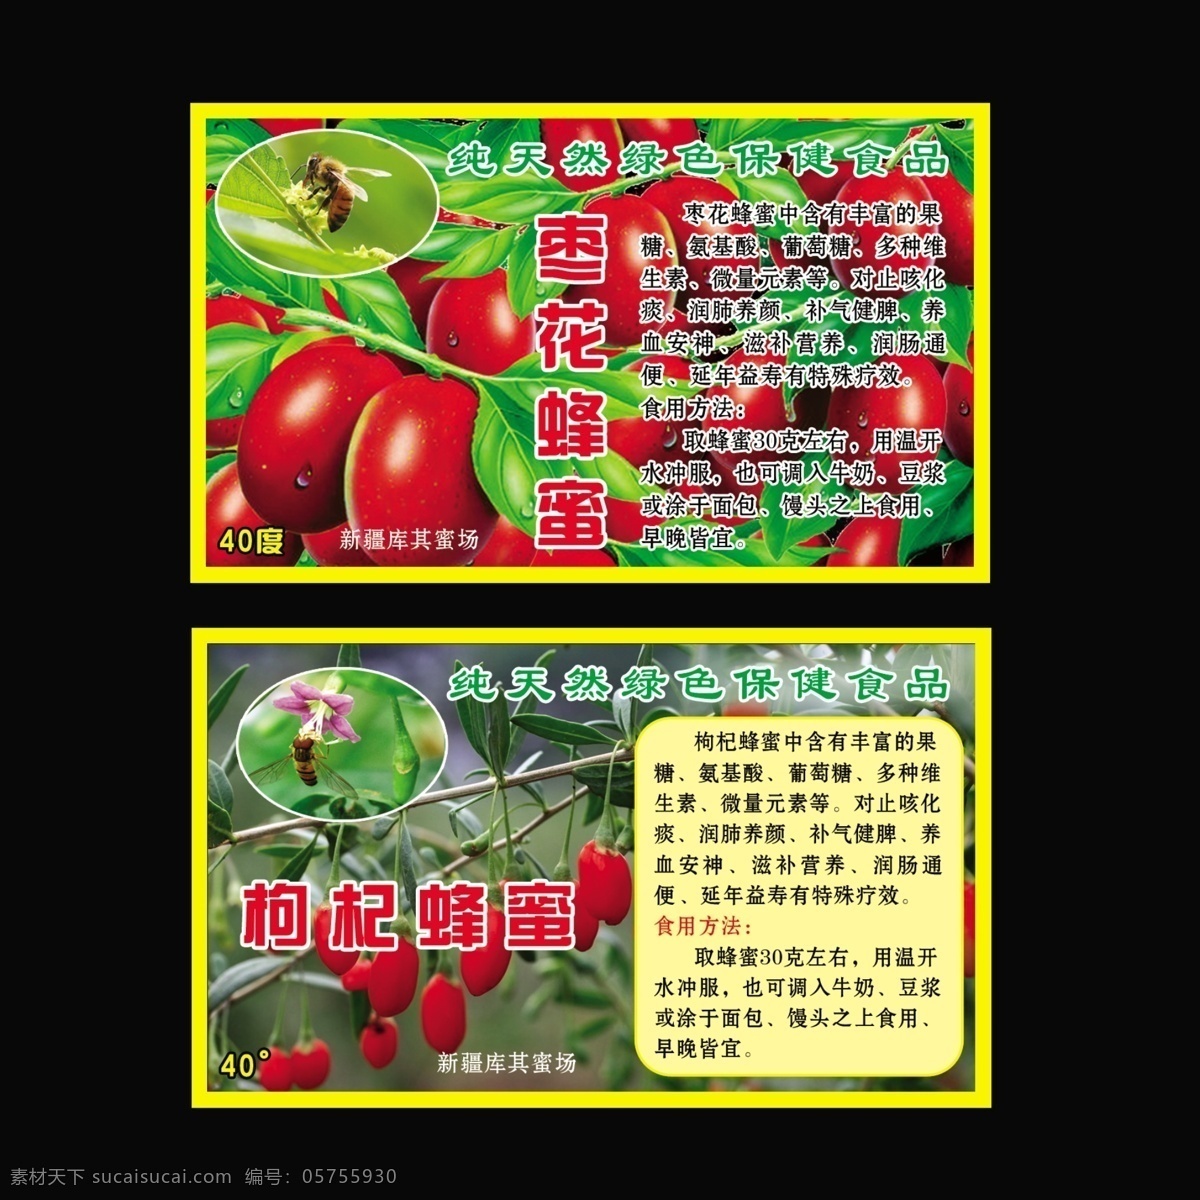 保健食品 蜂蜜 枣 新疆枣 枣花蜂蜜 保健 枸杞蜂蜜 绿色天然 展板模板 广告设计模板 源文件